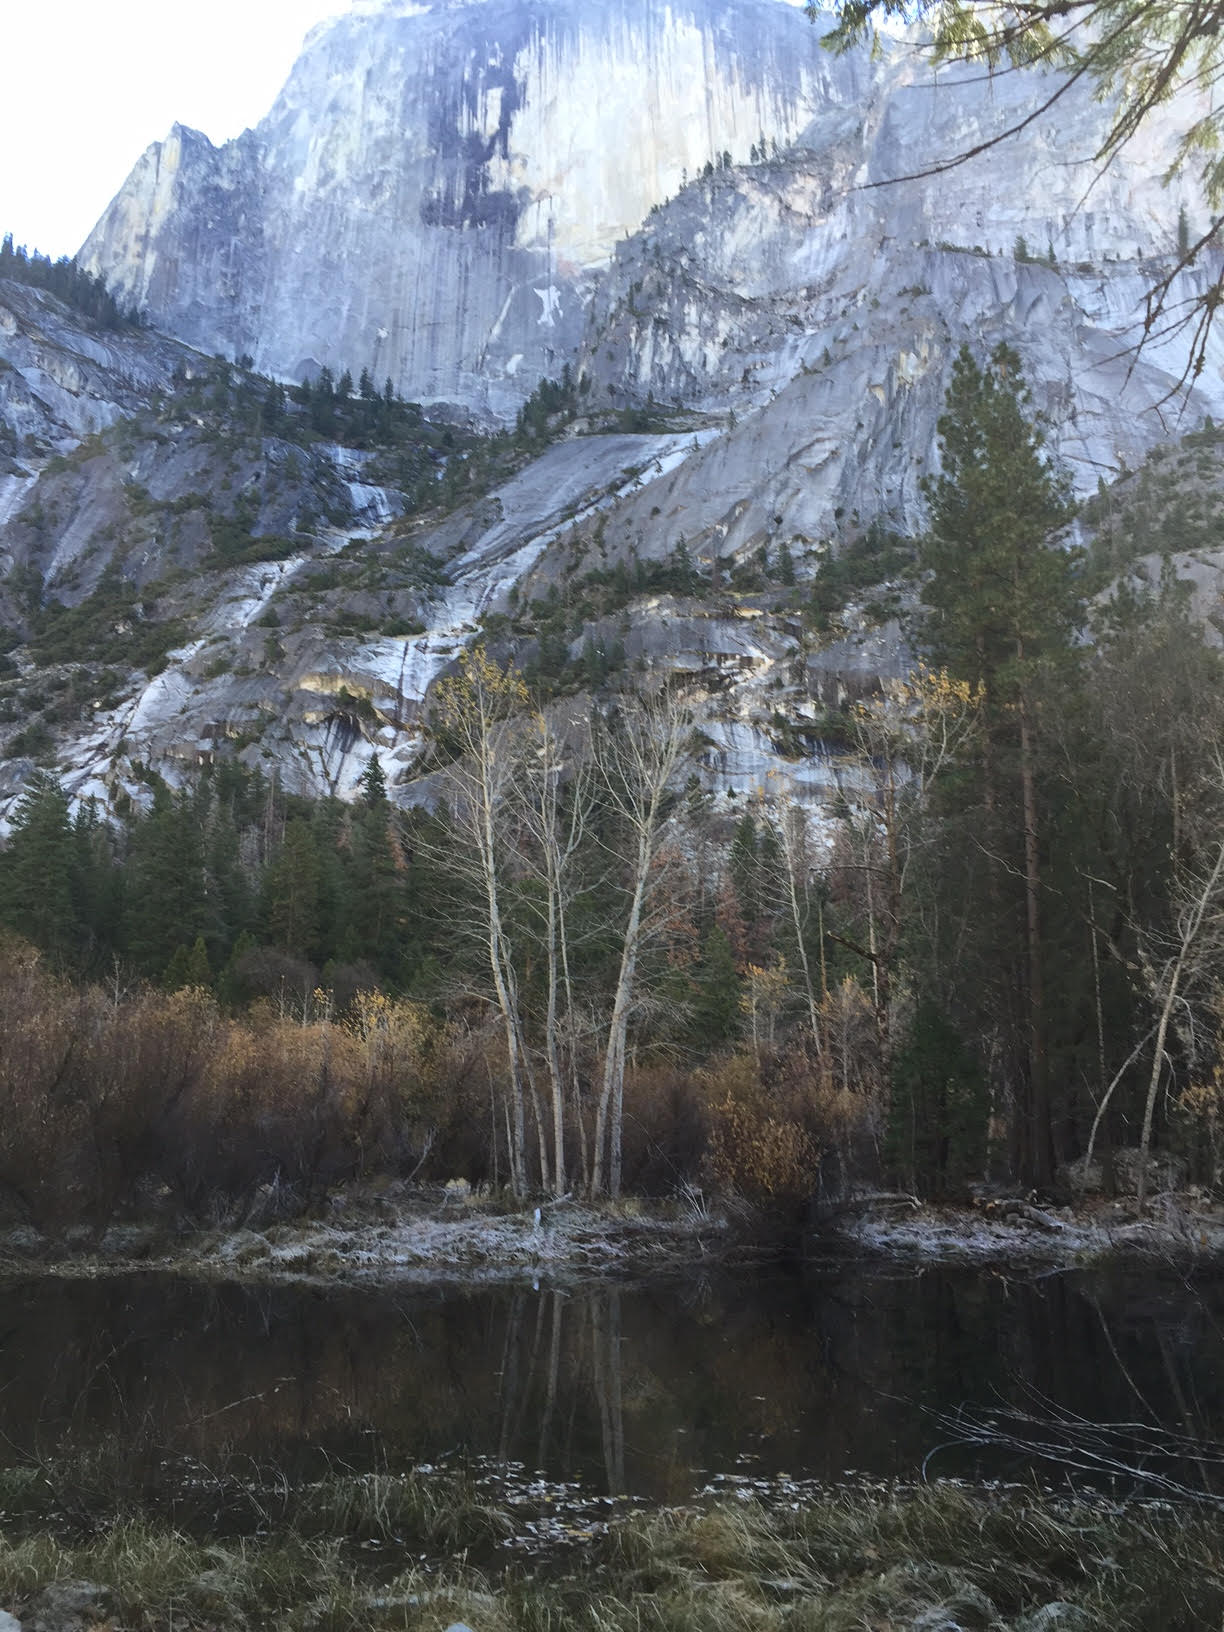 Yosemite Natural Park